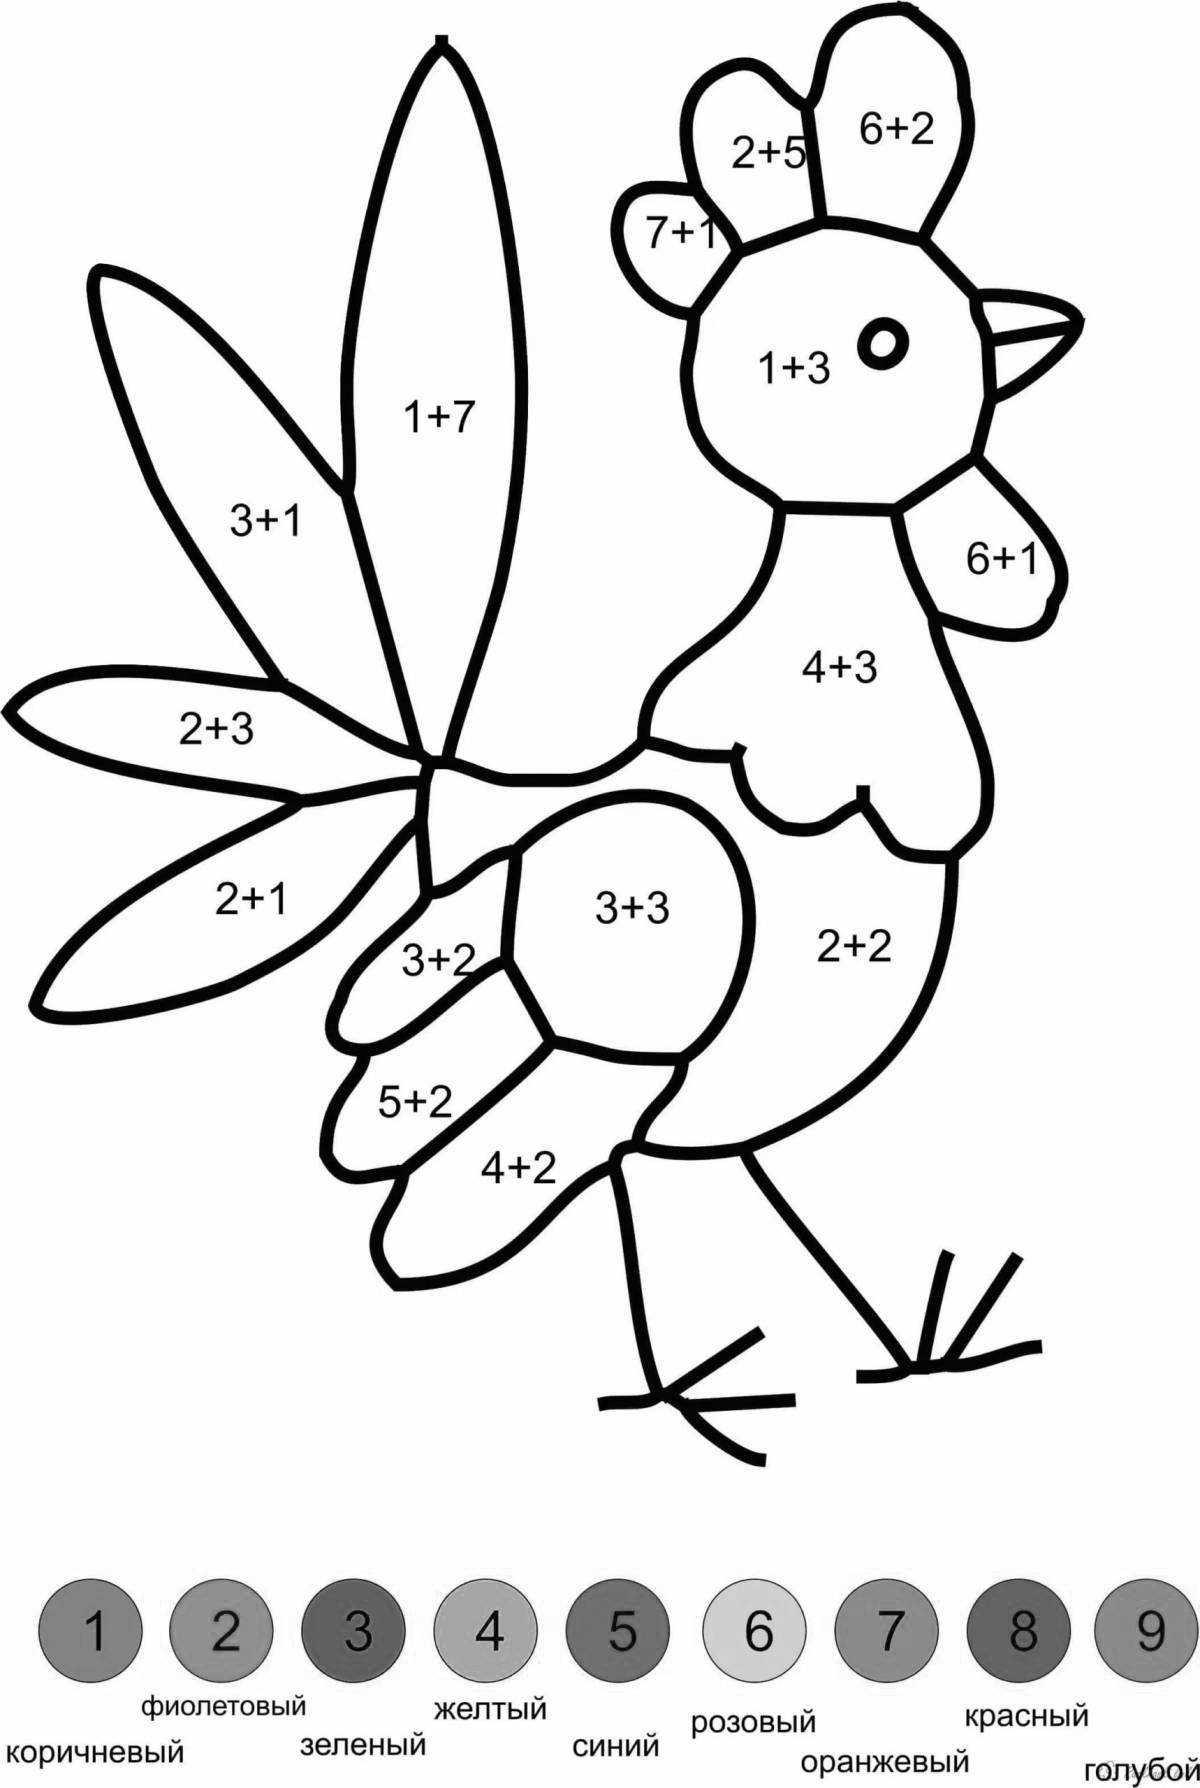 Креативная раскраска по номерам для детей 7 лет с примерами арифметики